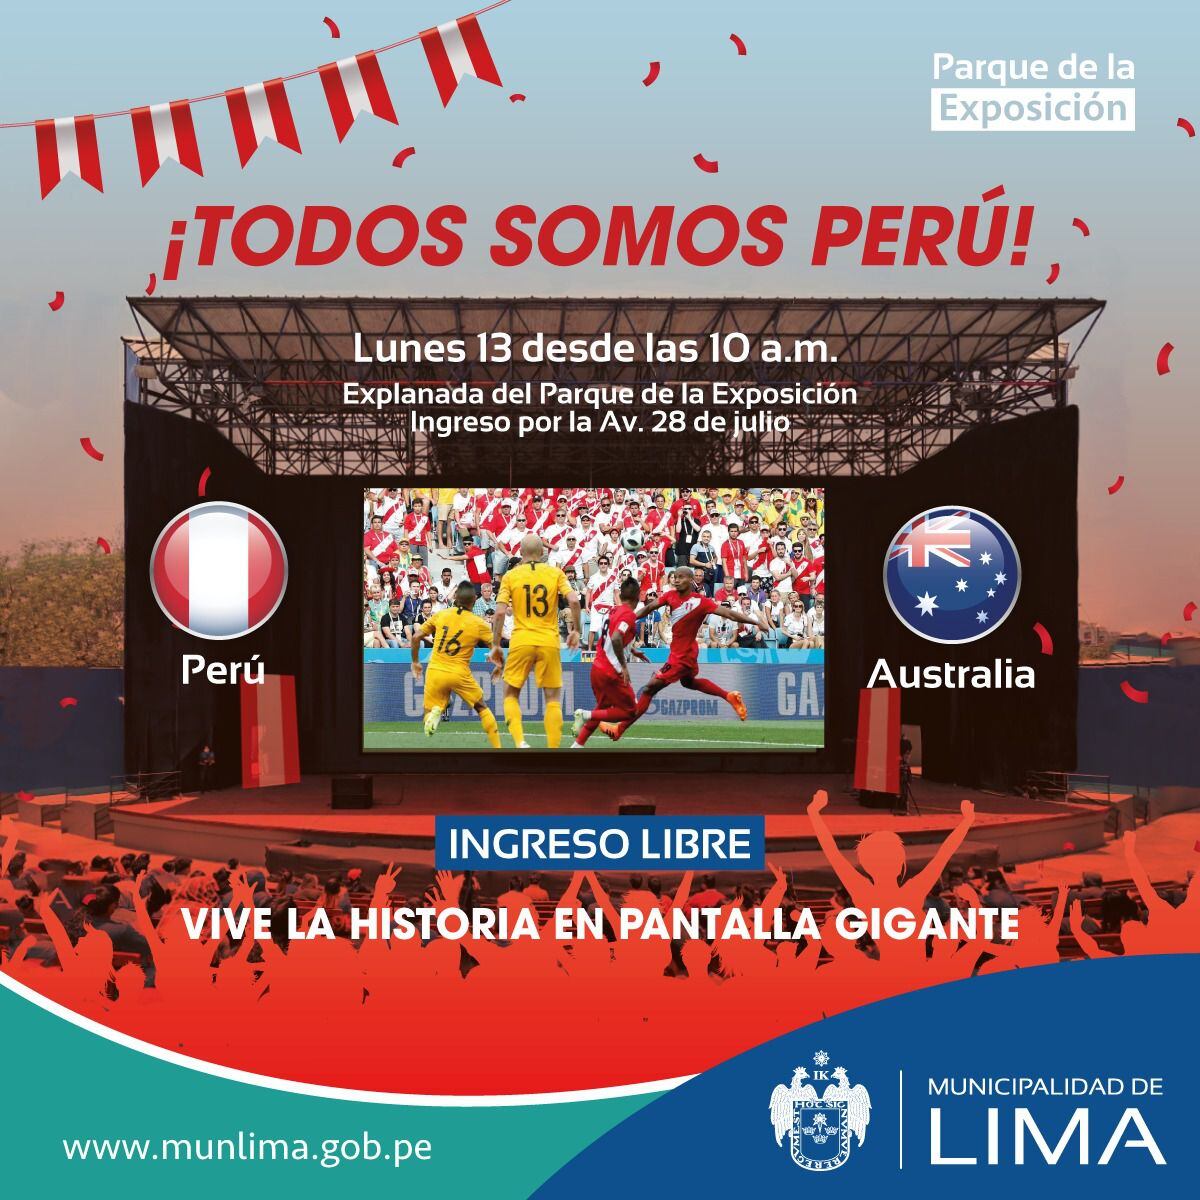 Perú vs. Australia se transmitirá en pantalla gigante en el Parque de la Exposición.